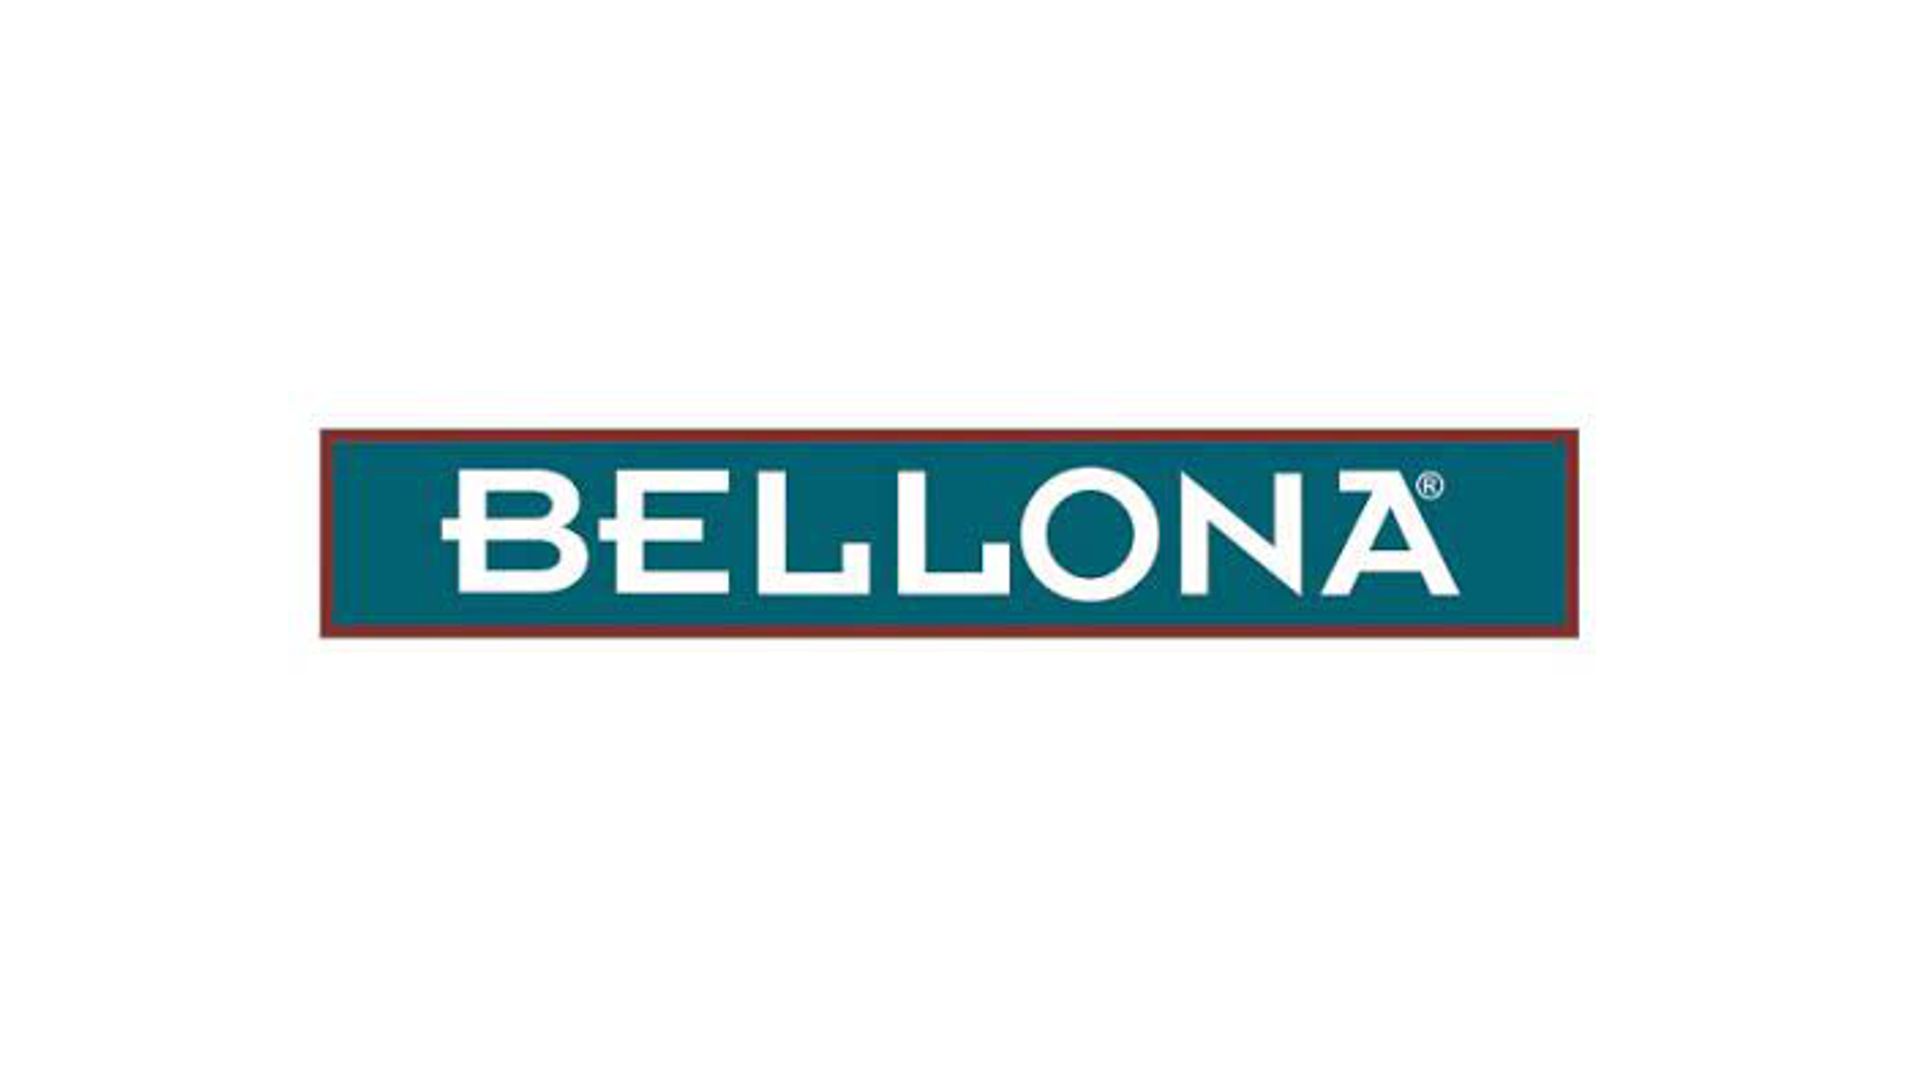 BELLONA, www.echonom.com